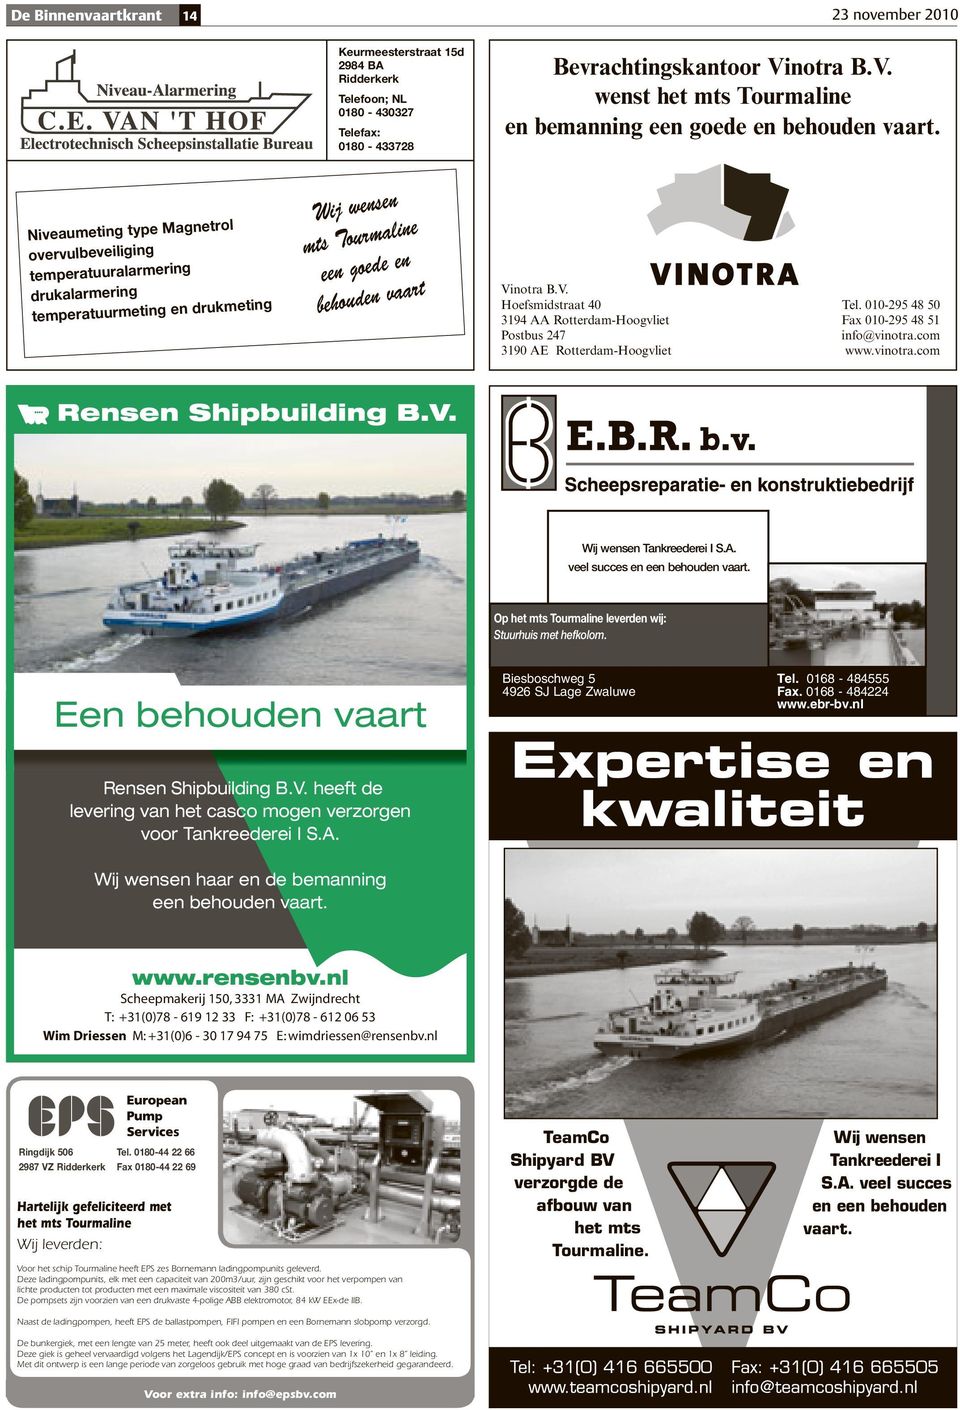 010-295 48 50 3194 AA Rotterdam-Hoogvliet Fax 010-295 48 51 Postbus 247 info@vinotra.com 3190 AE Rotterdam-Hoogvliet www.vinotra.com Rensen Shipbuilding B.V. Wij wensen Tankreederei I S.A. veel succes en een behouden vaart.